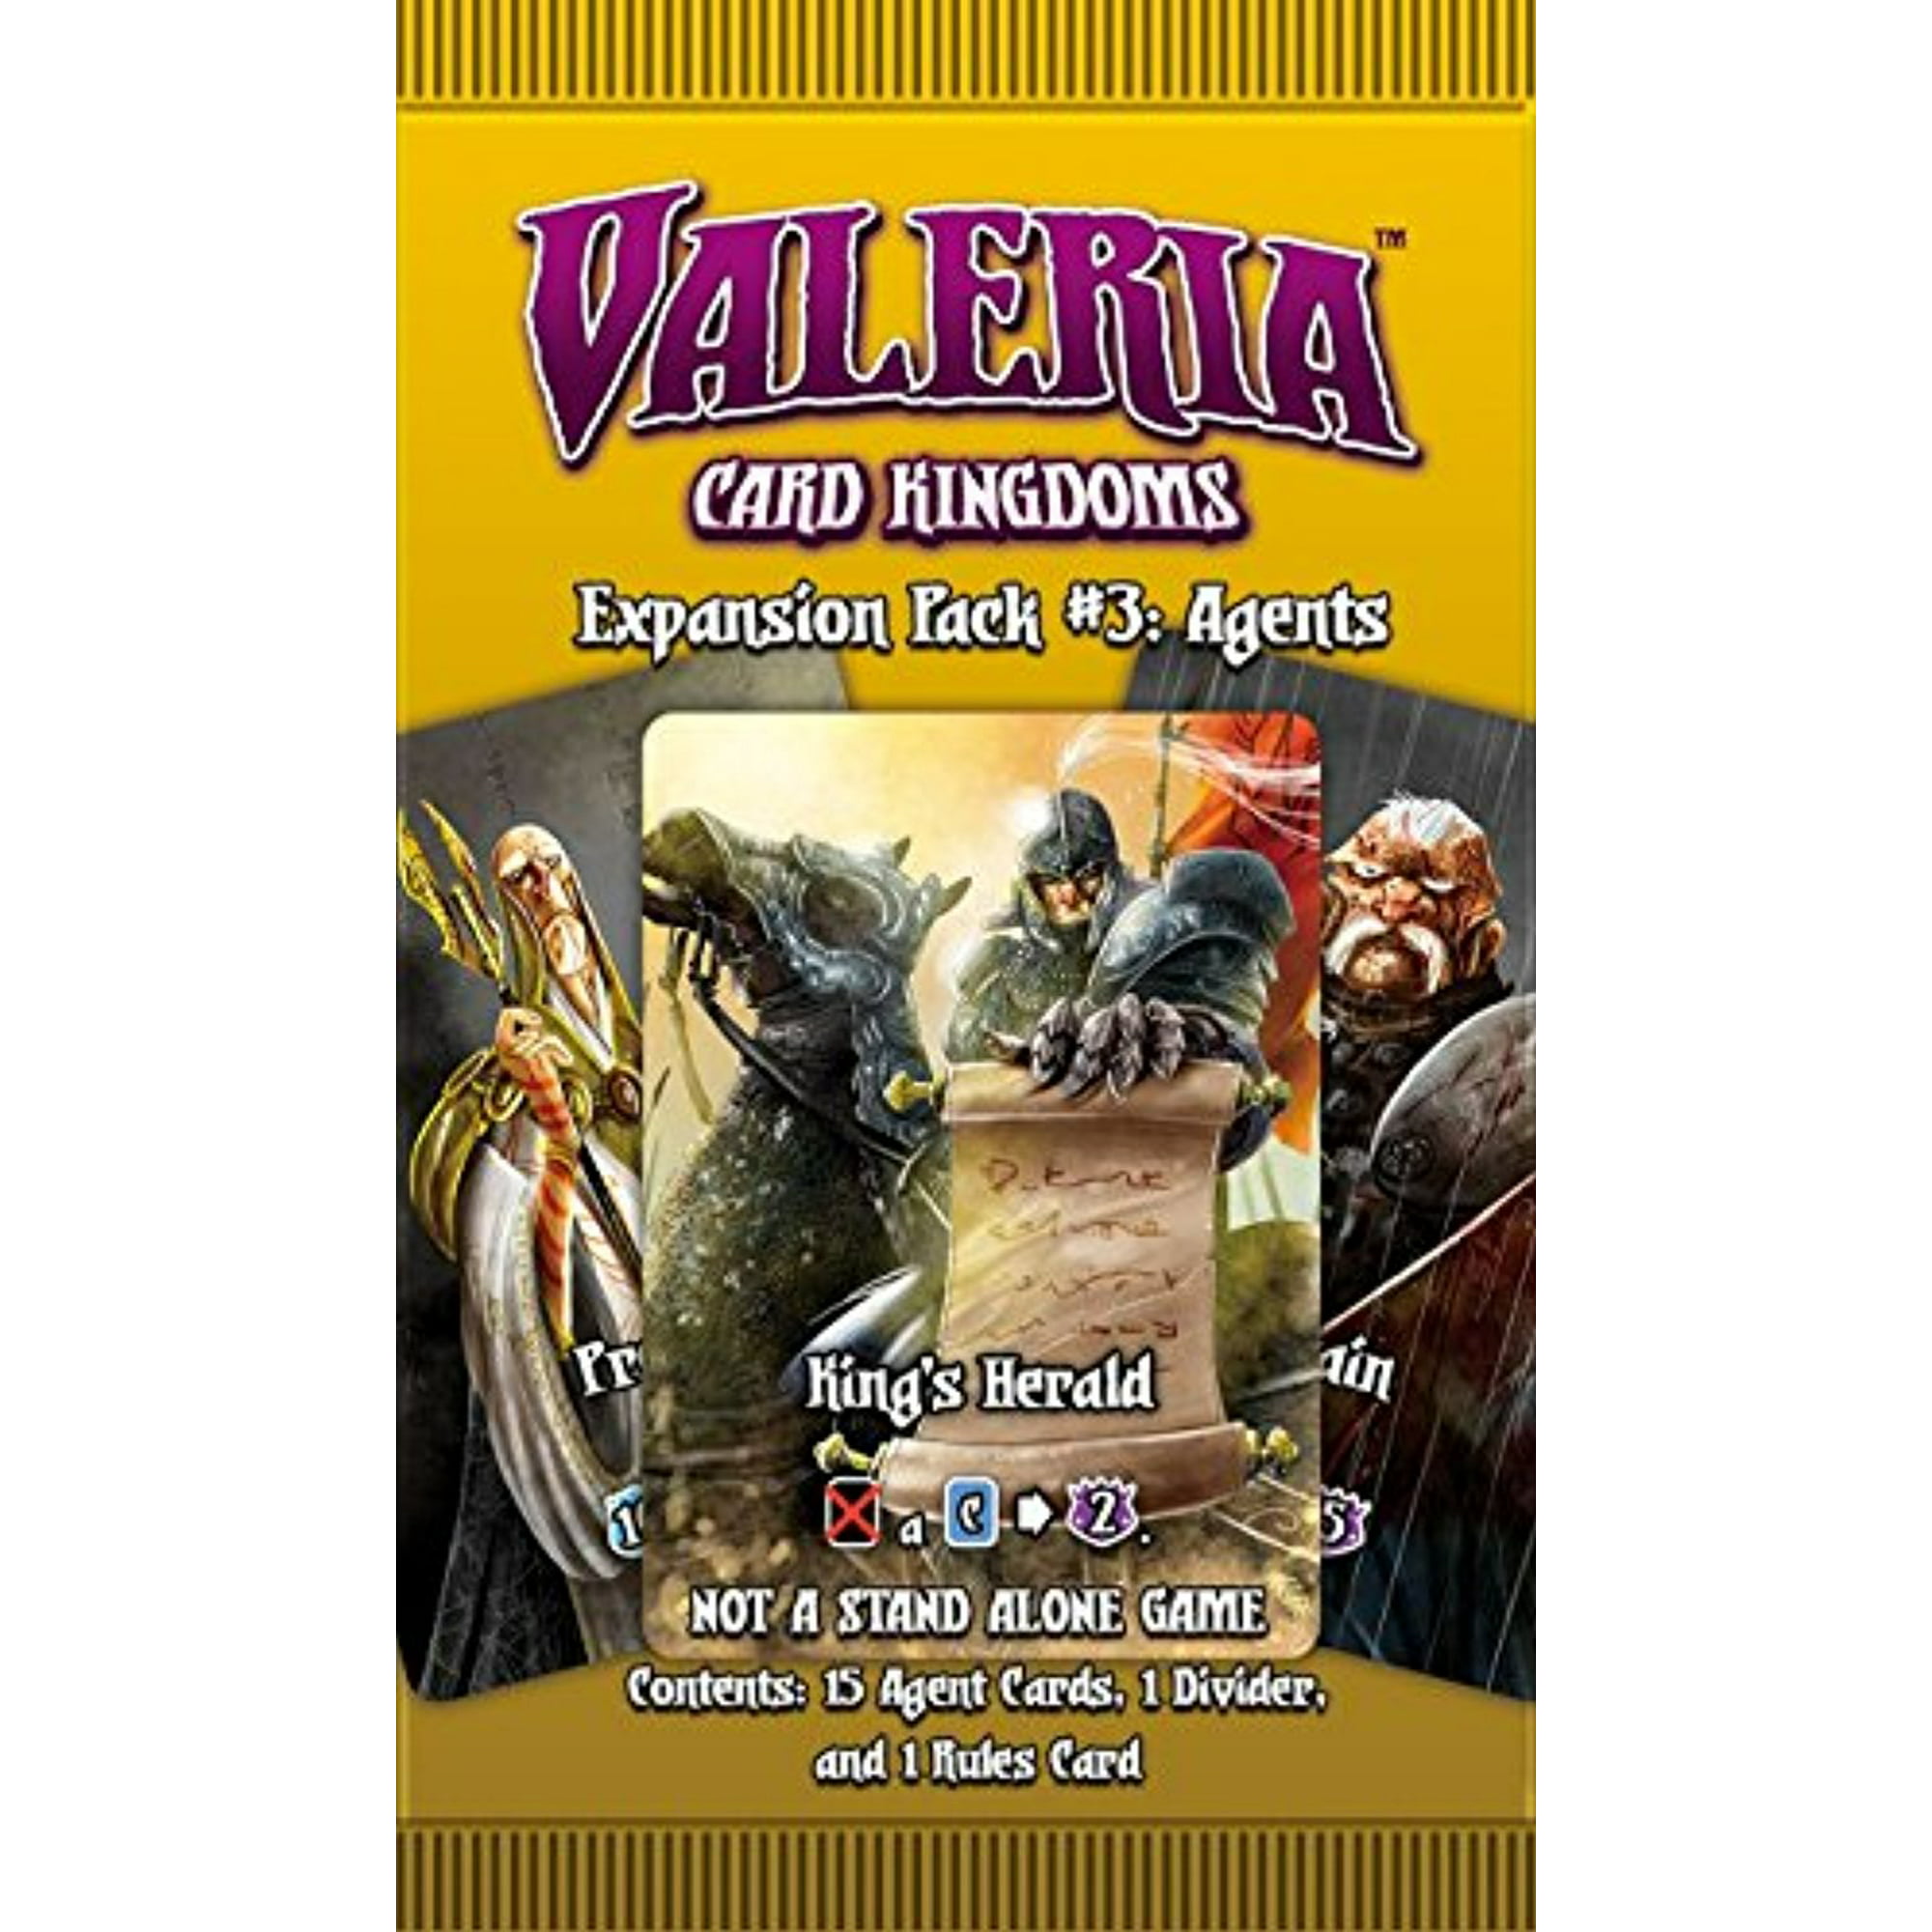 Dice Kingdoms of Valeria — Daily Magic Games